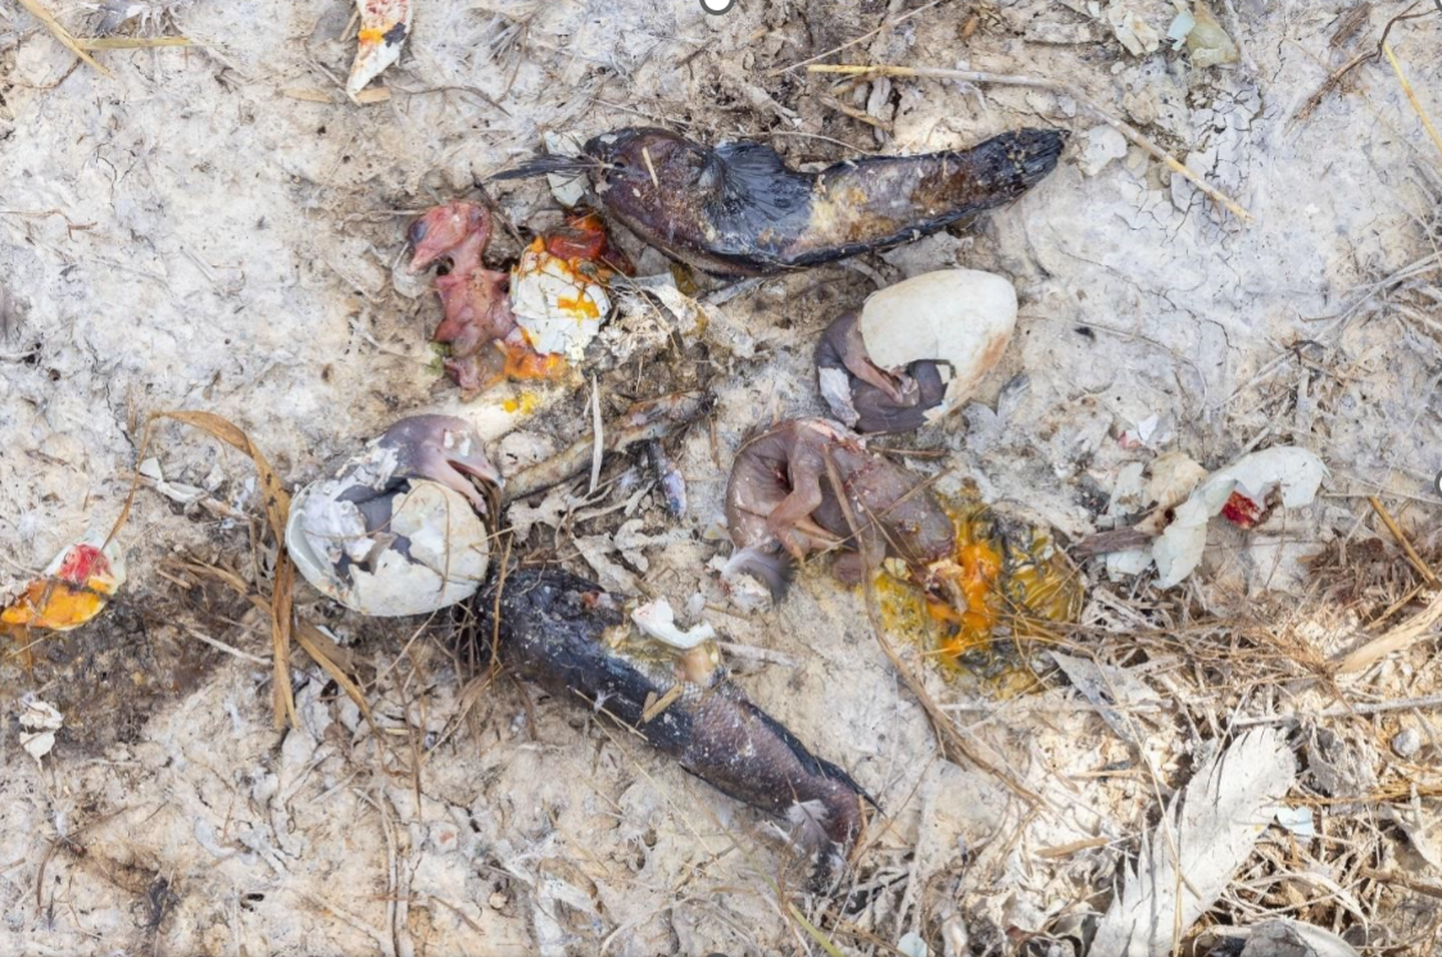 Sangelaiul leiti hiljuti tapetud vast koorunud kormoranitibud.